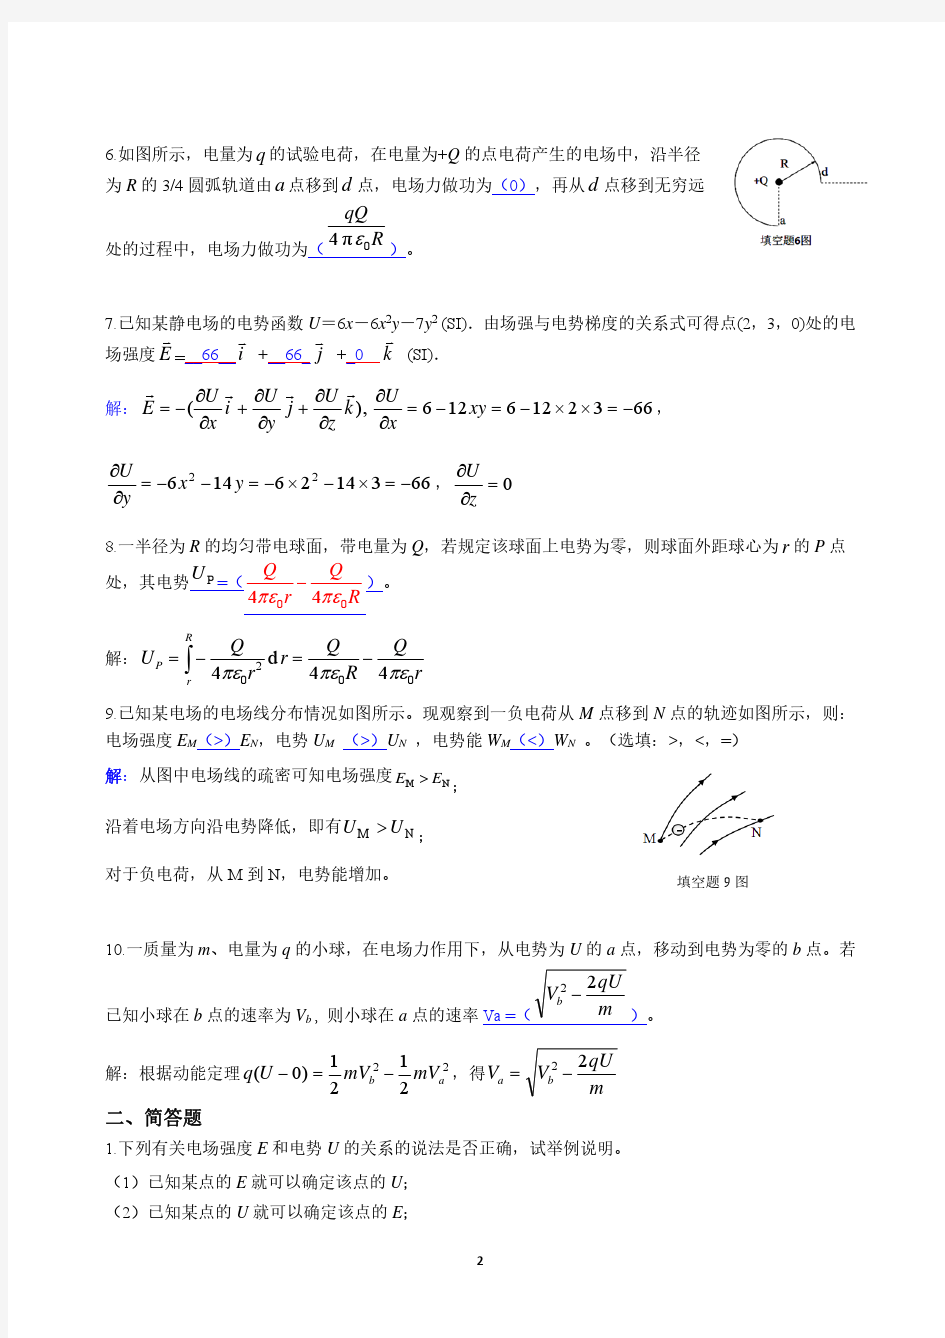 《大学物理AI》作业 No.07 电势(参考解答)